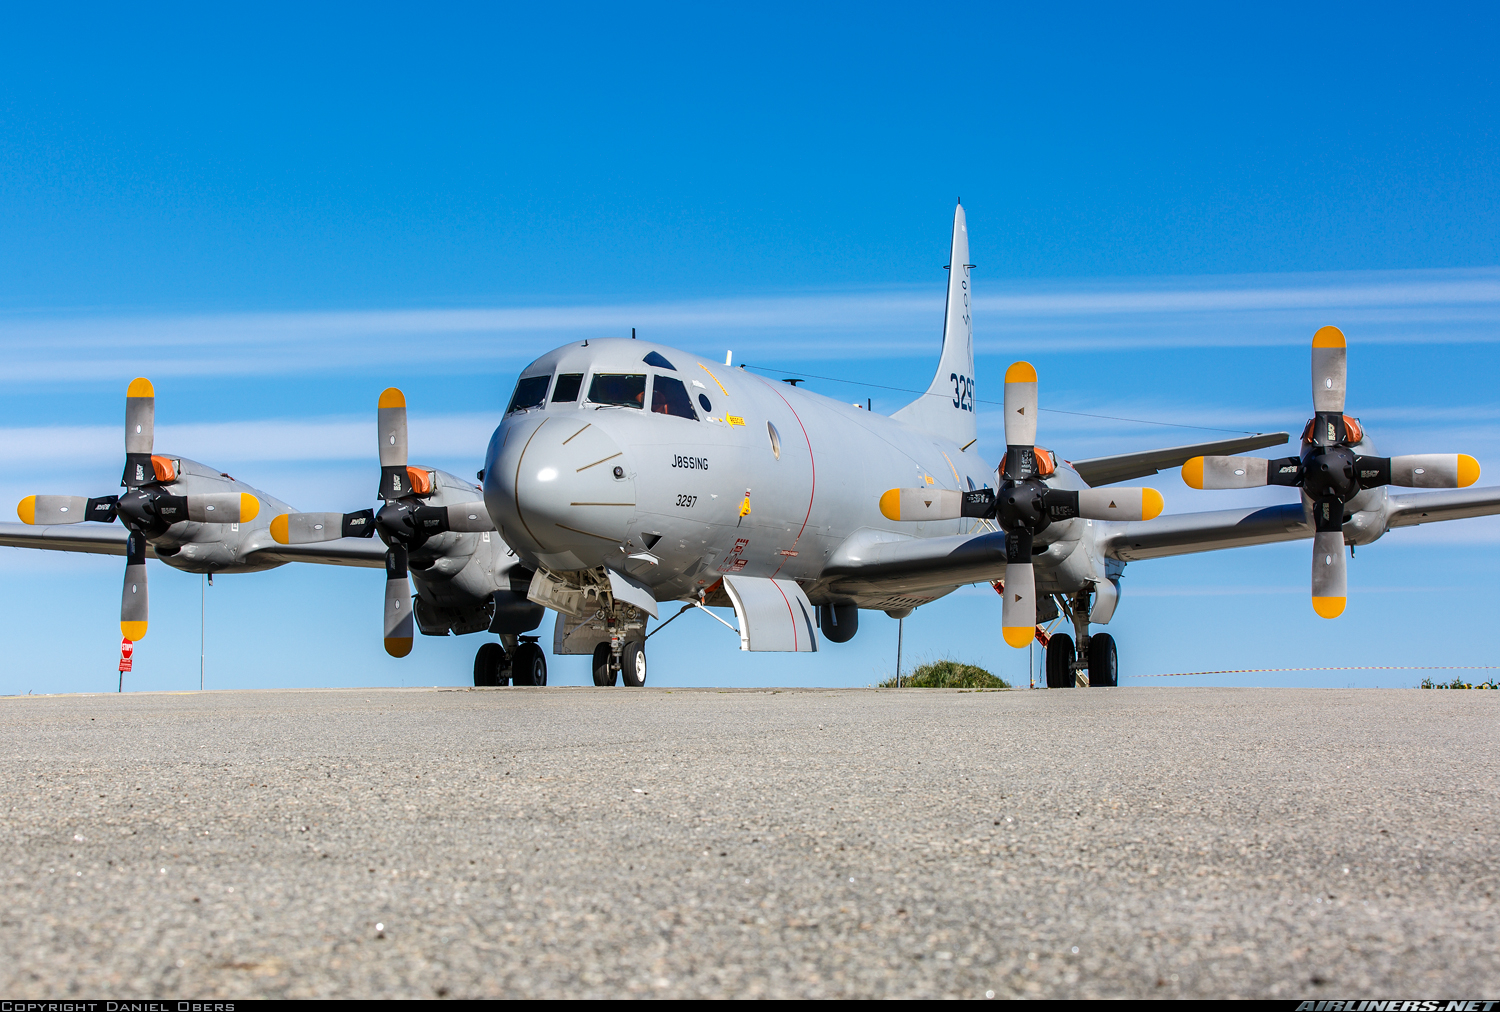 P-3C Orion para la Armada Argentina – La tercera es la vencida?